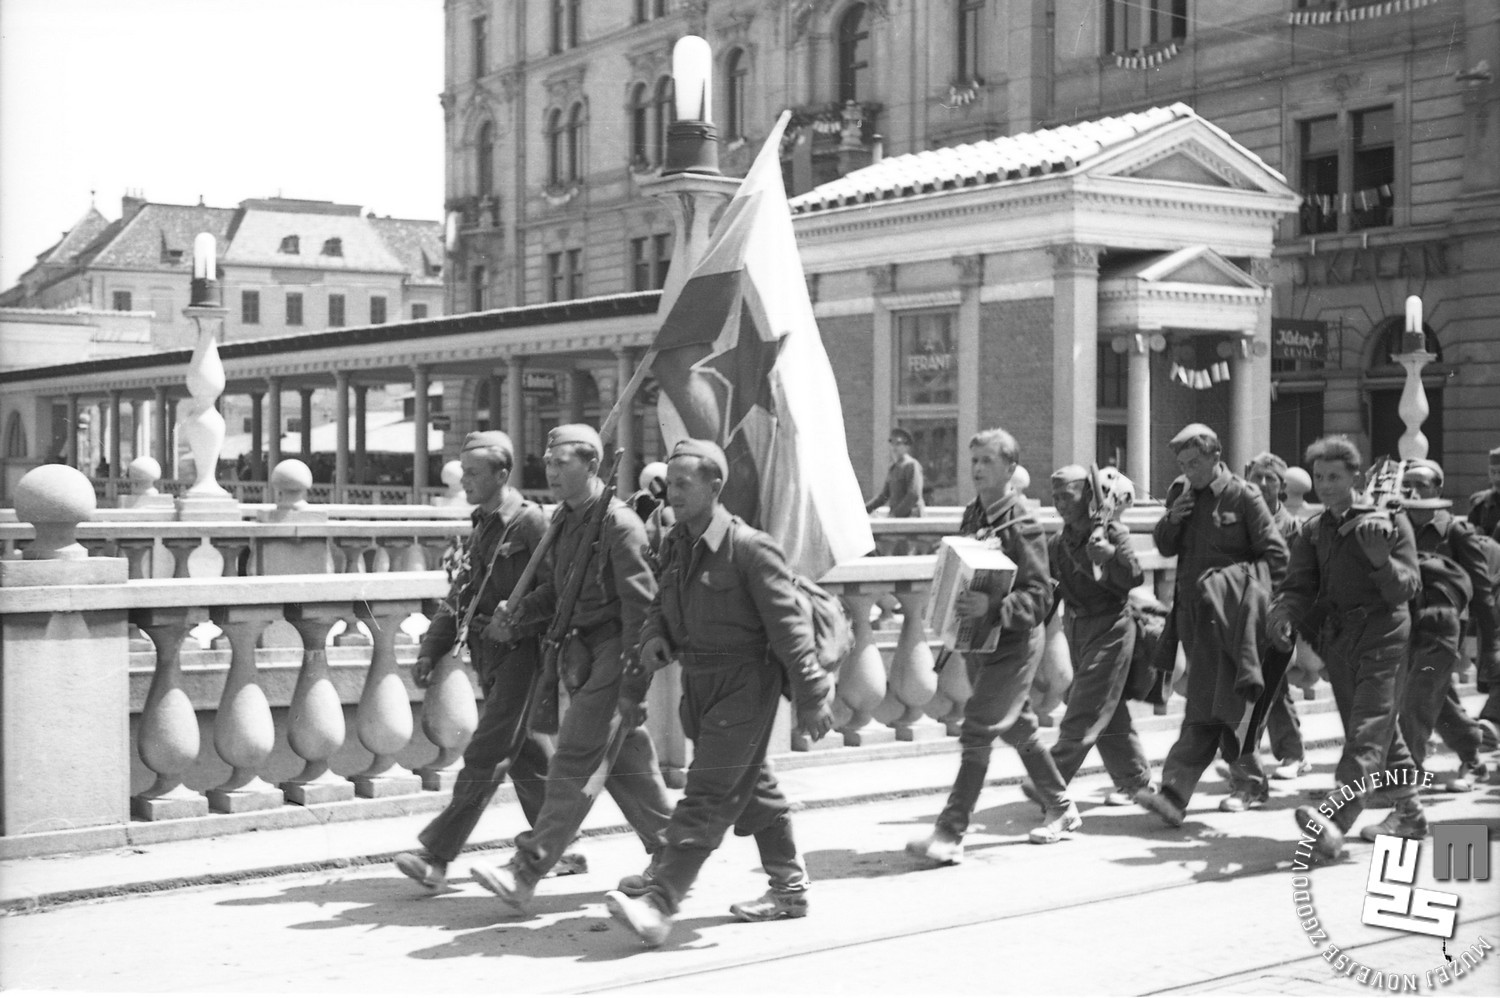 Prihod partizanov v Ljubljano, 9. maj 1945. Foto Vlado Vavpotič, hrani MNZS.